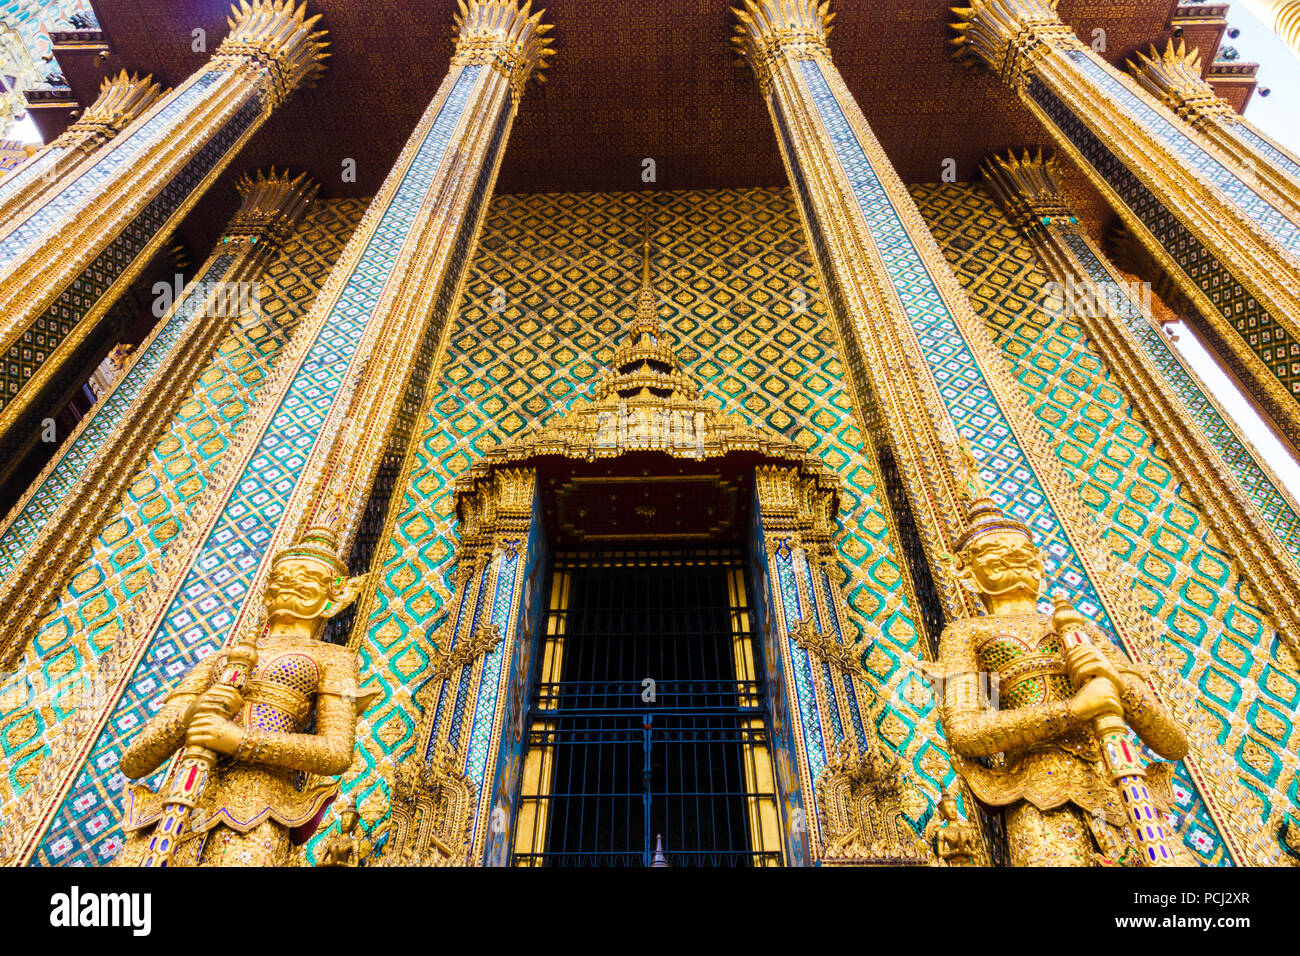 Gardienne des statues dans le Grand Palace, Bangkok, Thaïlande Banque D'Images